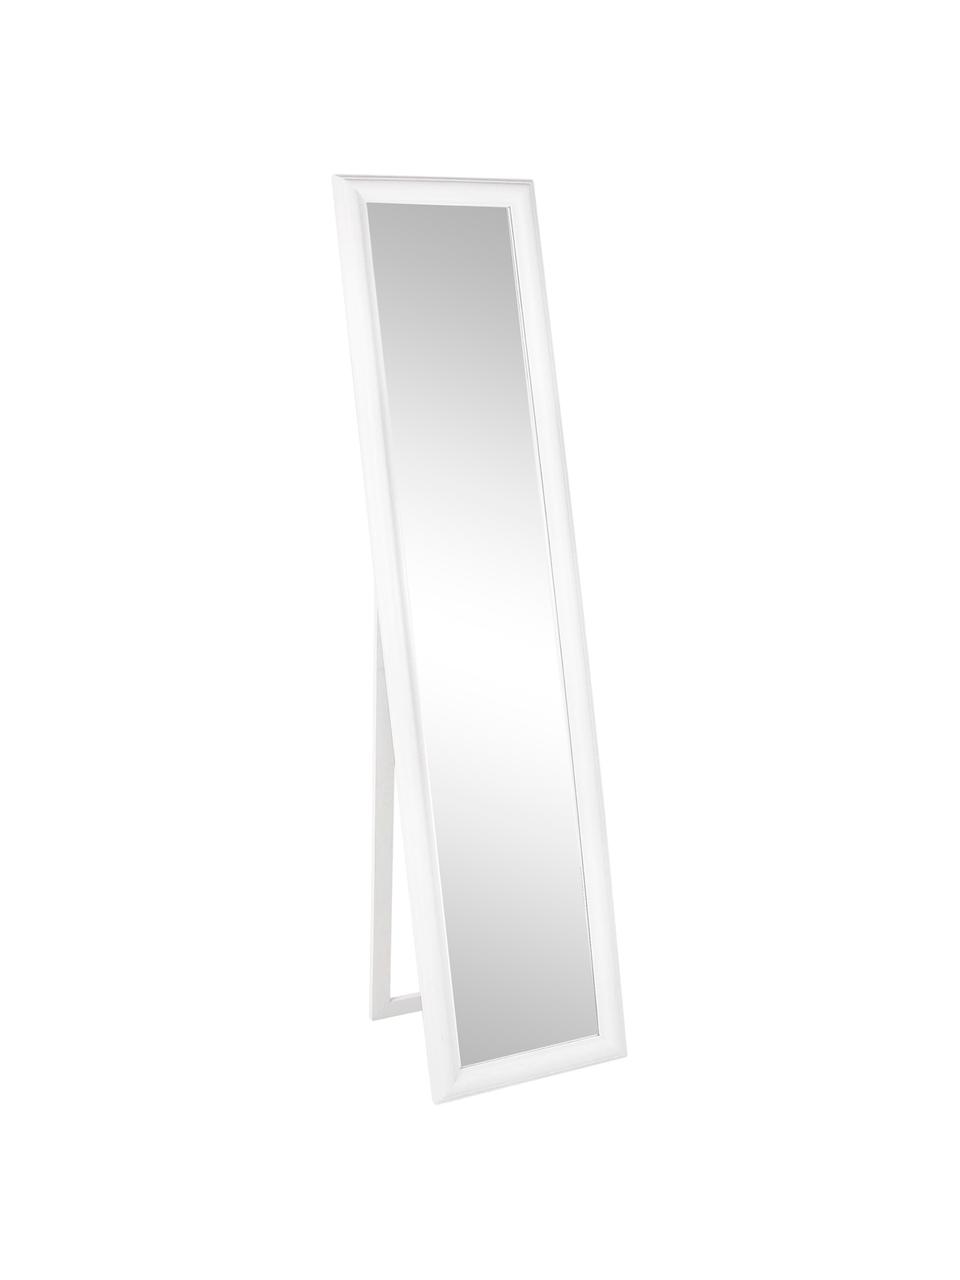 Eckiger Standspiegel Sanzio mit weißem Paulowniaholzrahmen, Rahmen: Paulowniaholz, beschichte, Spiegelfläche: Spiegelglas, Weiß, B 40 x H 170 cm